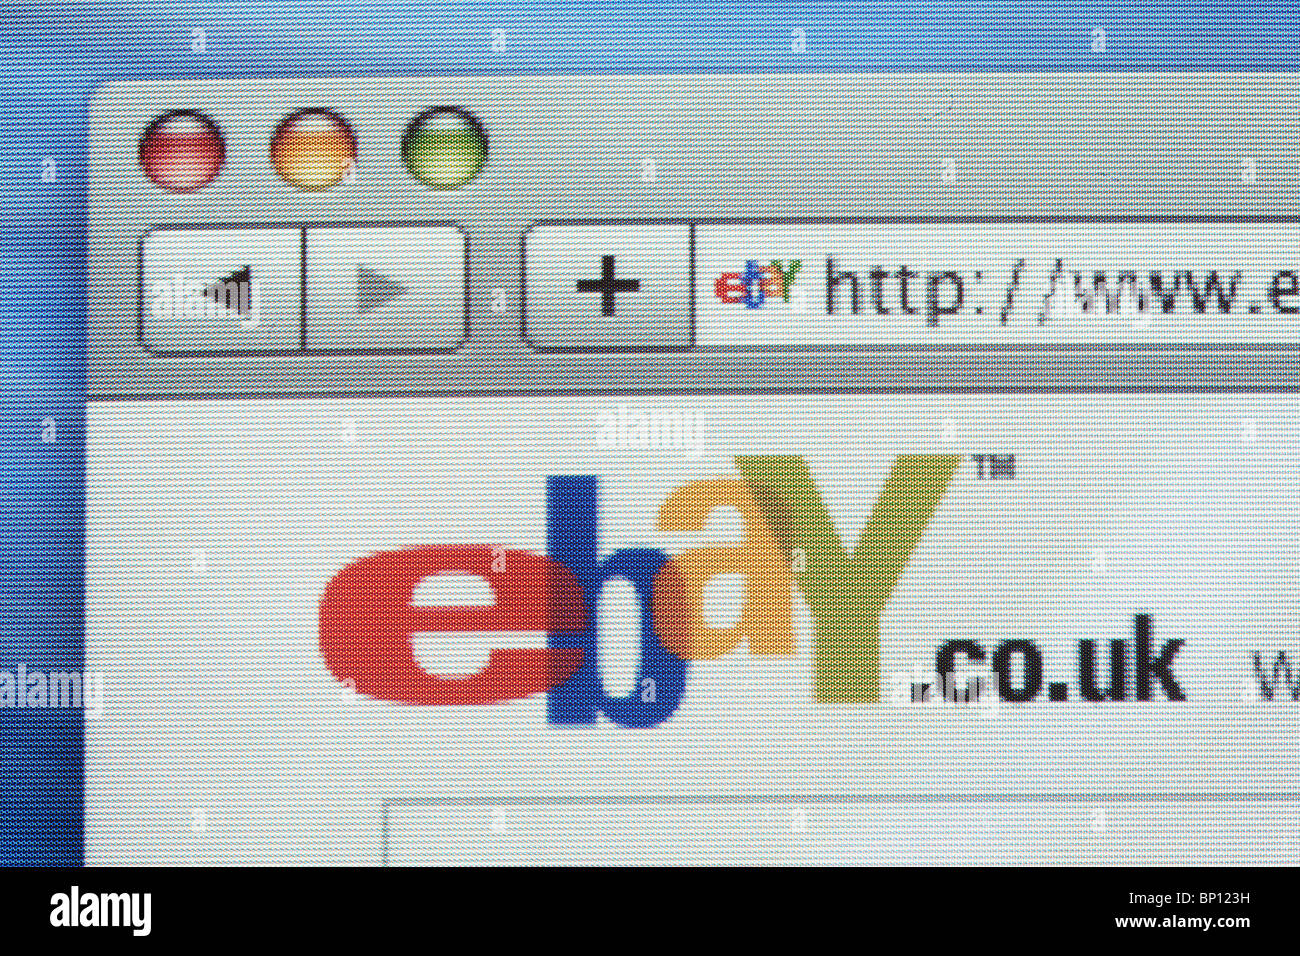 Ebay.co.uk site web, vu sur l'écran de l'ordinateur Banque D'Images